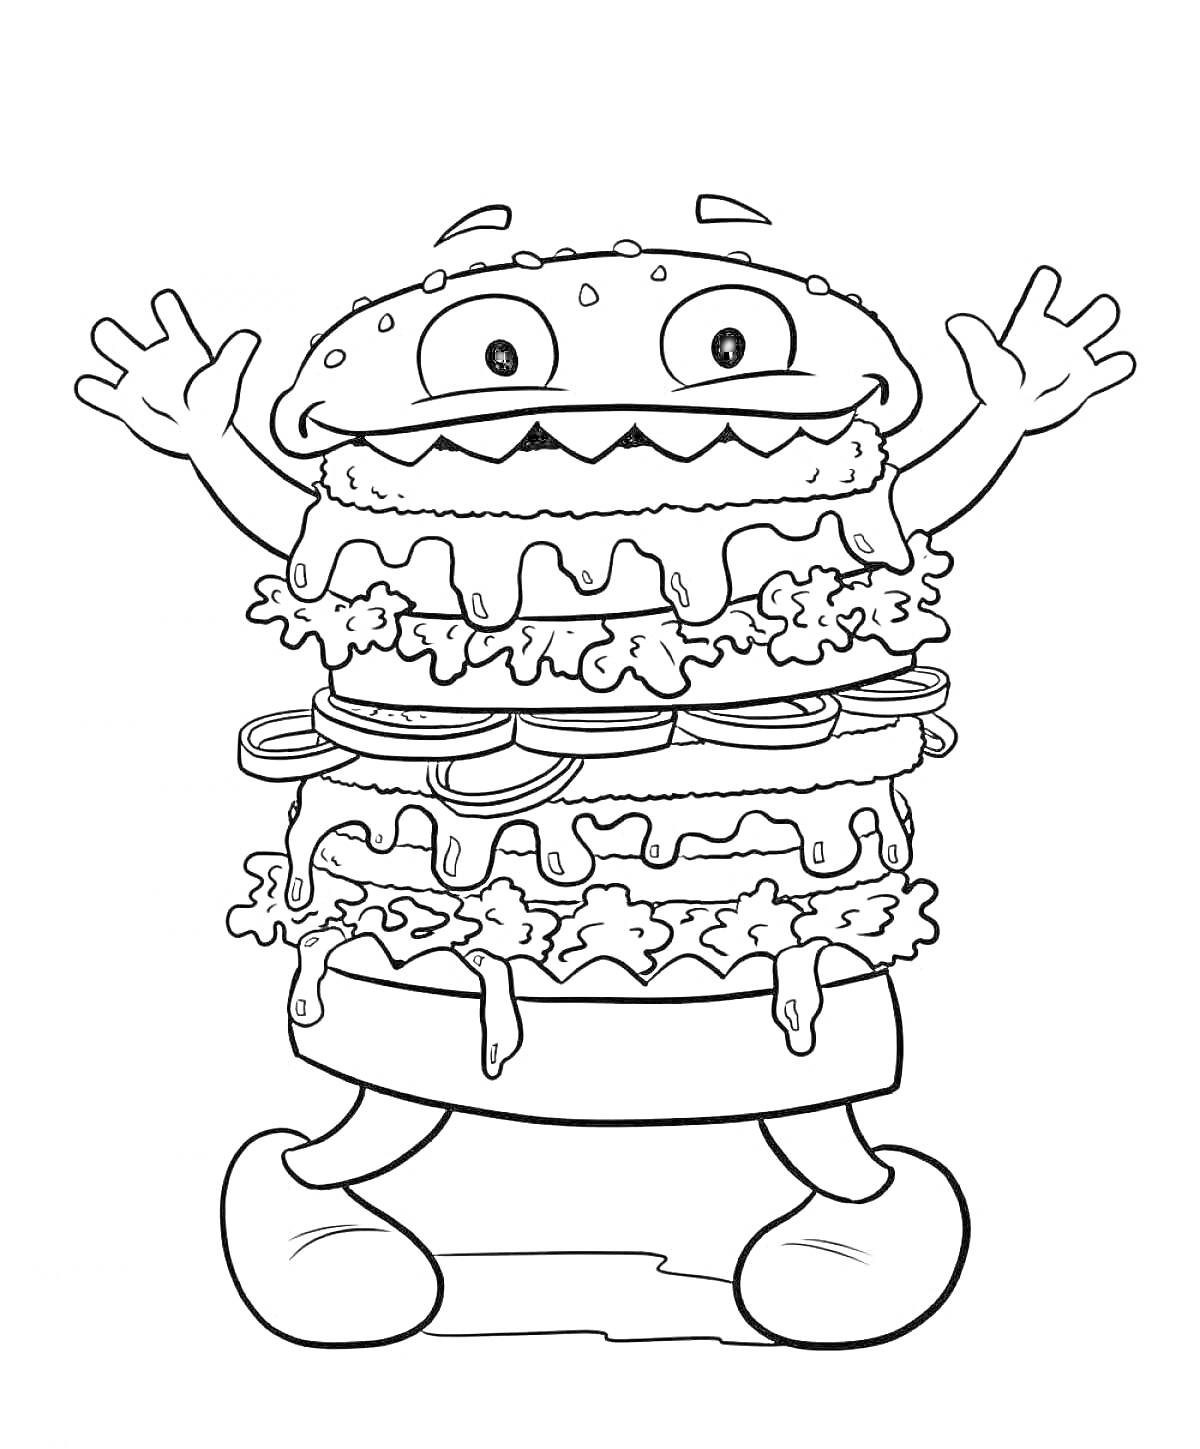 Раскраска Веселый многослойный бургер с руками и ногами, с овощами, соусом, сыром и семенами